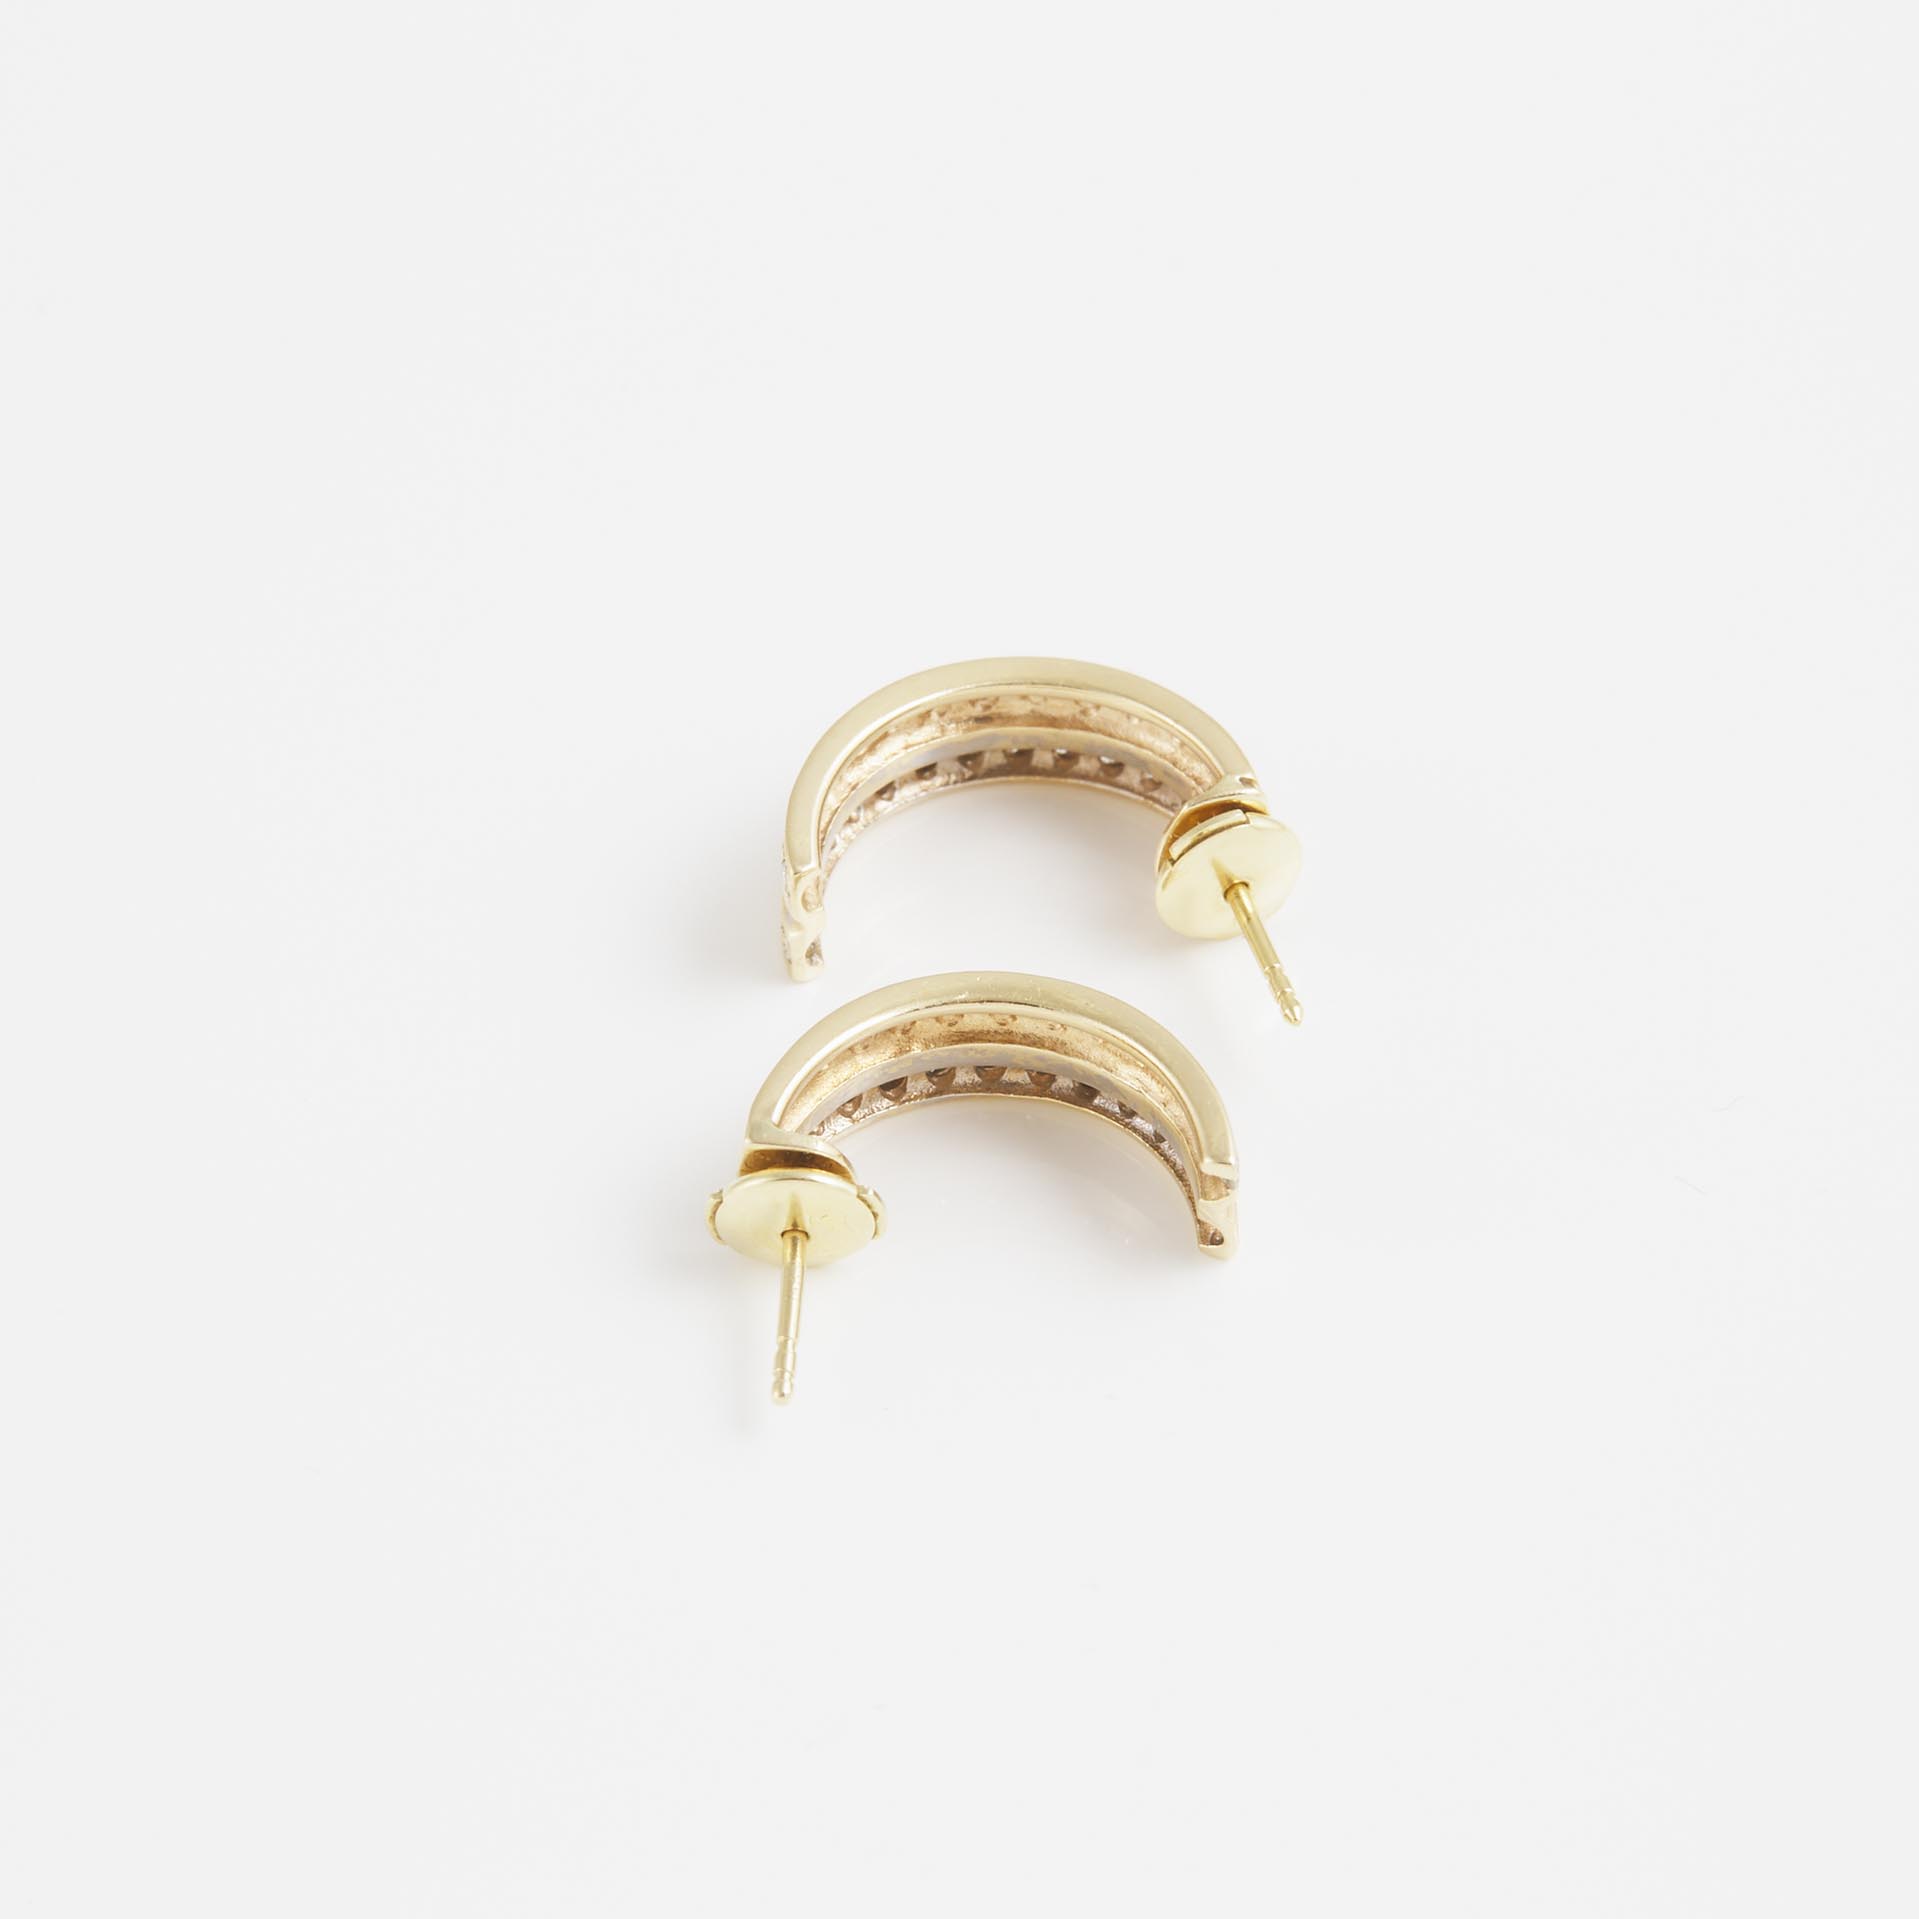 Pair Of 14k Yellow Gold Half Hoop Earrings